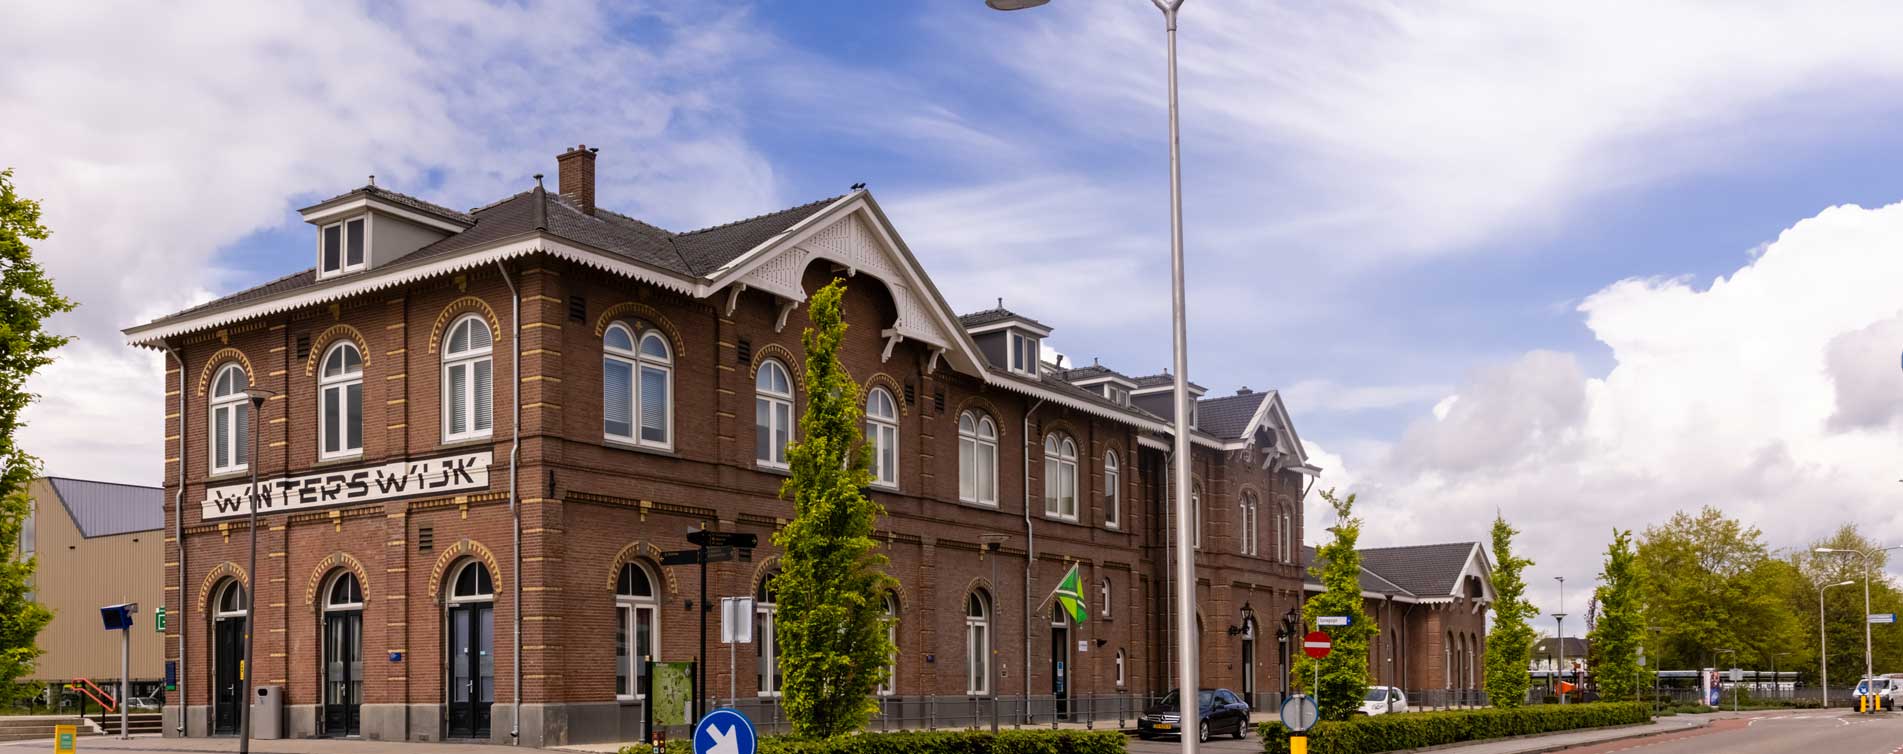 NS station van Winterswijk - Hypotheek Advies Centrum